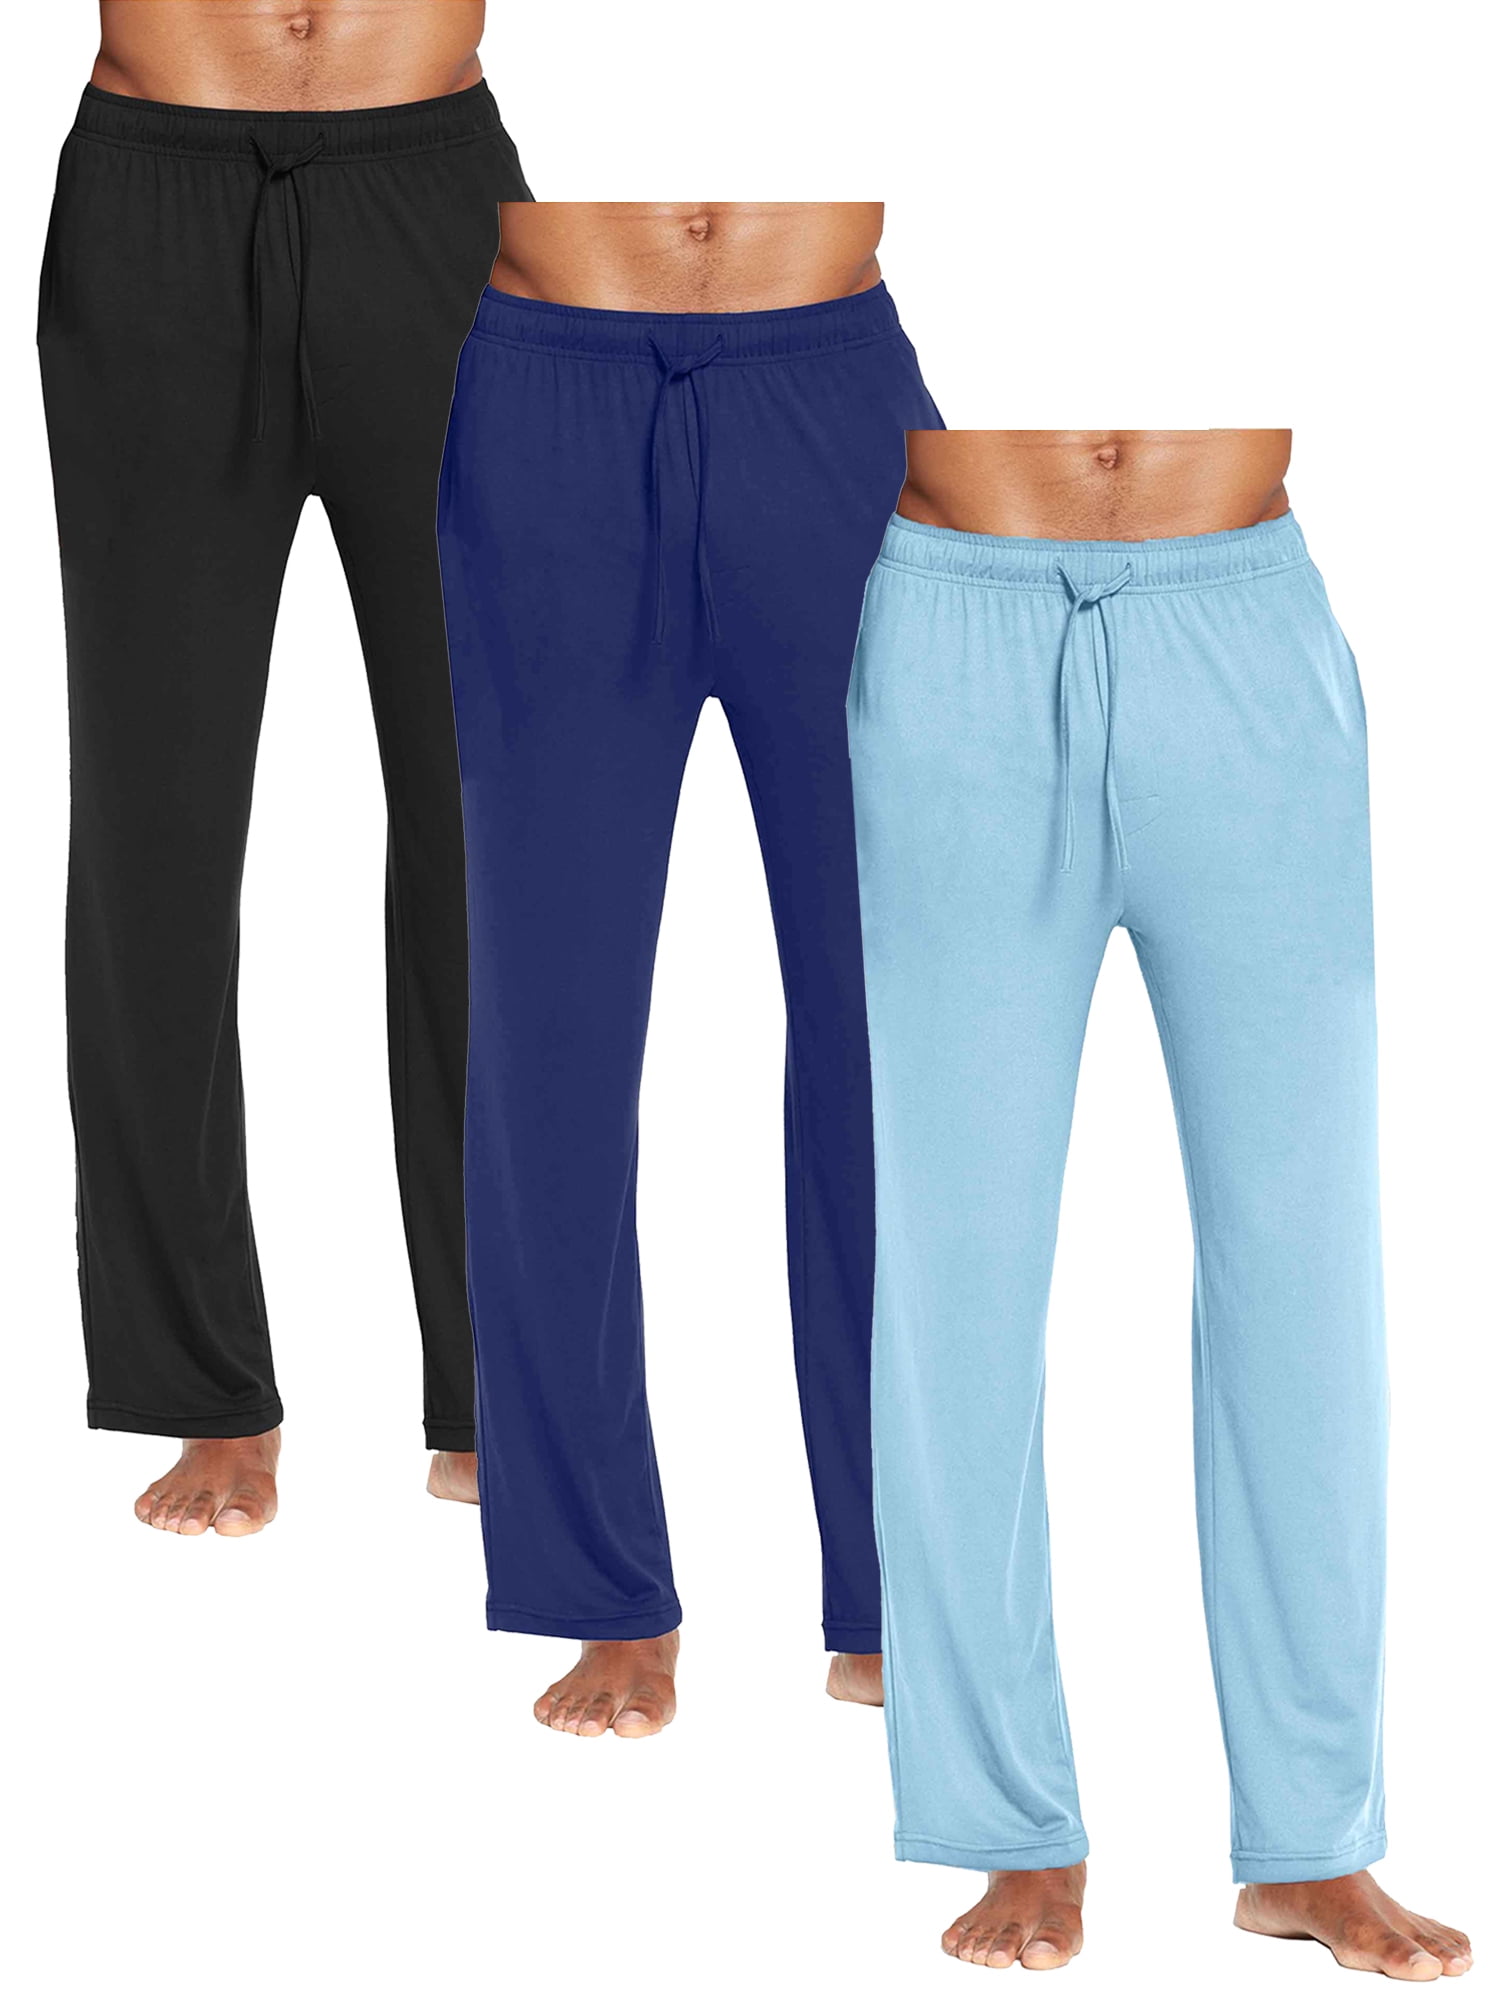 3-Pack Men's Classic Lounge Pants (Sizes, S-3XL) - Walmart.com